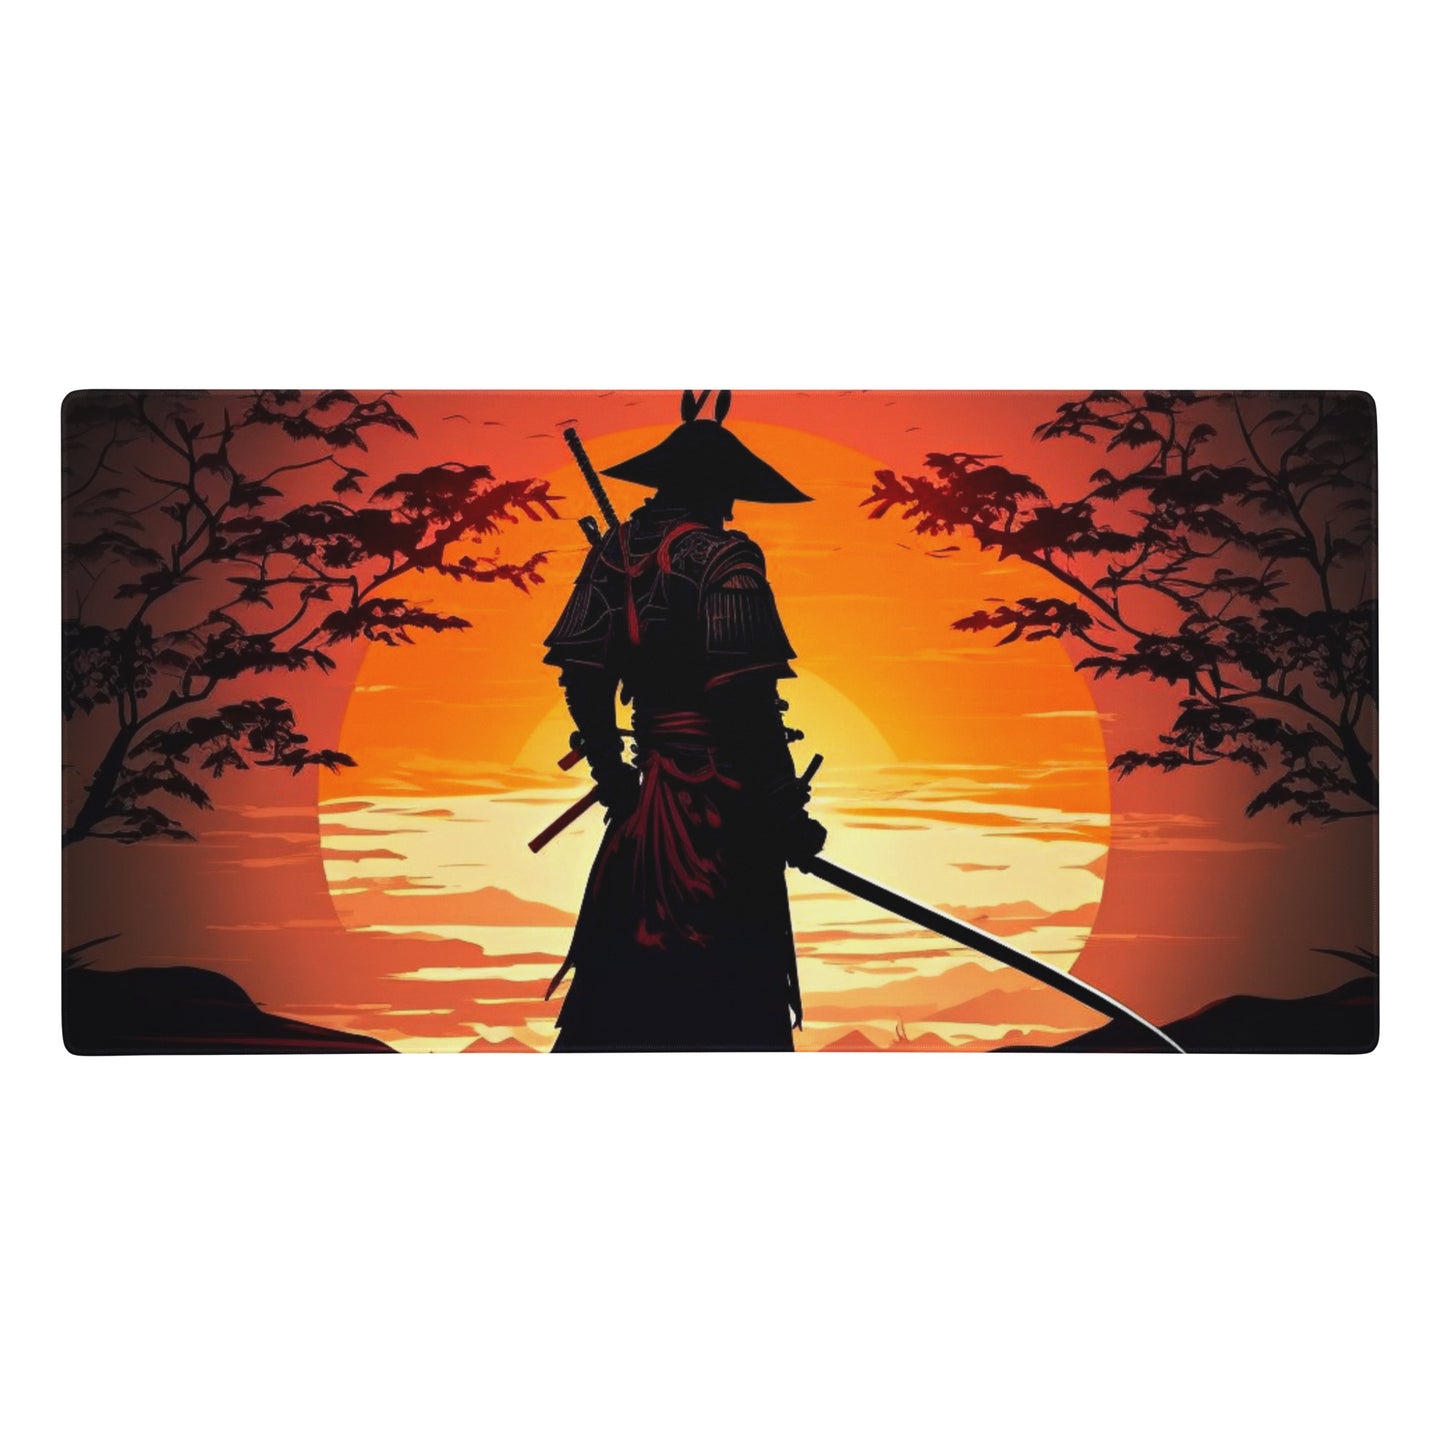 Samurai at Sunset Gaming Mouse Pad/Battle Mat